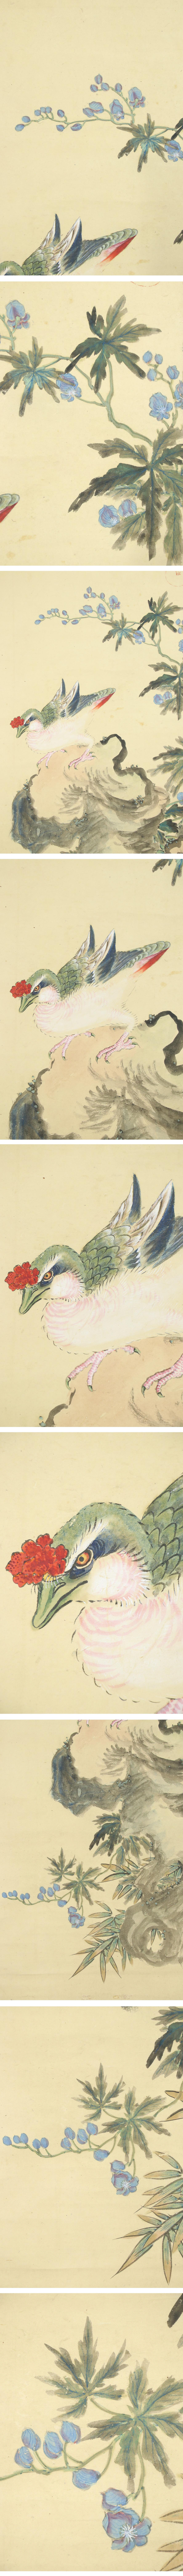 得価高評価◆尾形光琳◆鳳凰雛鳥図◆花鳥◆日本画◆紙本◆掛軸◆k540 花鳥、鳥獣